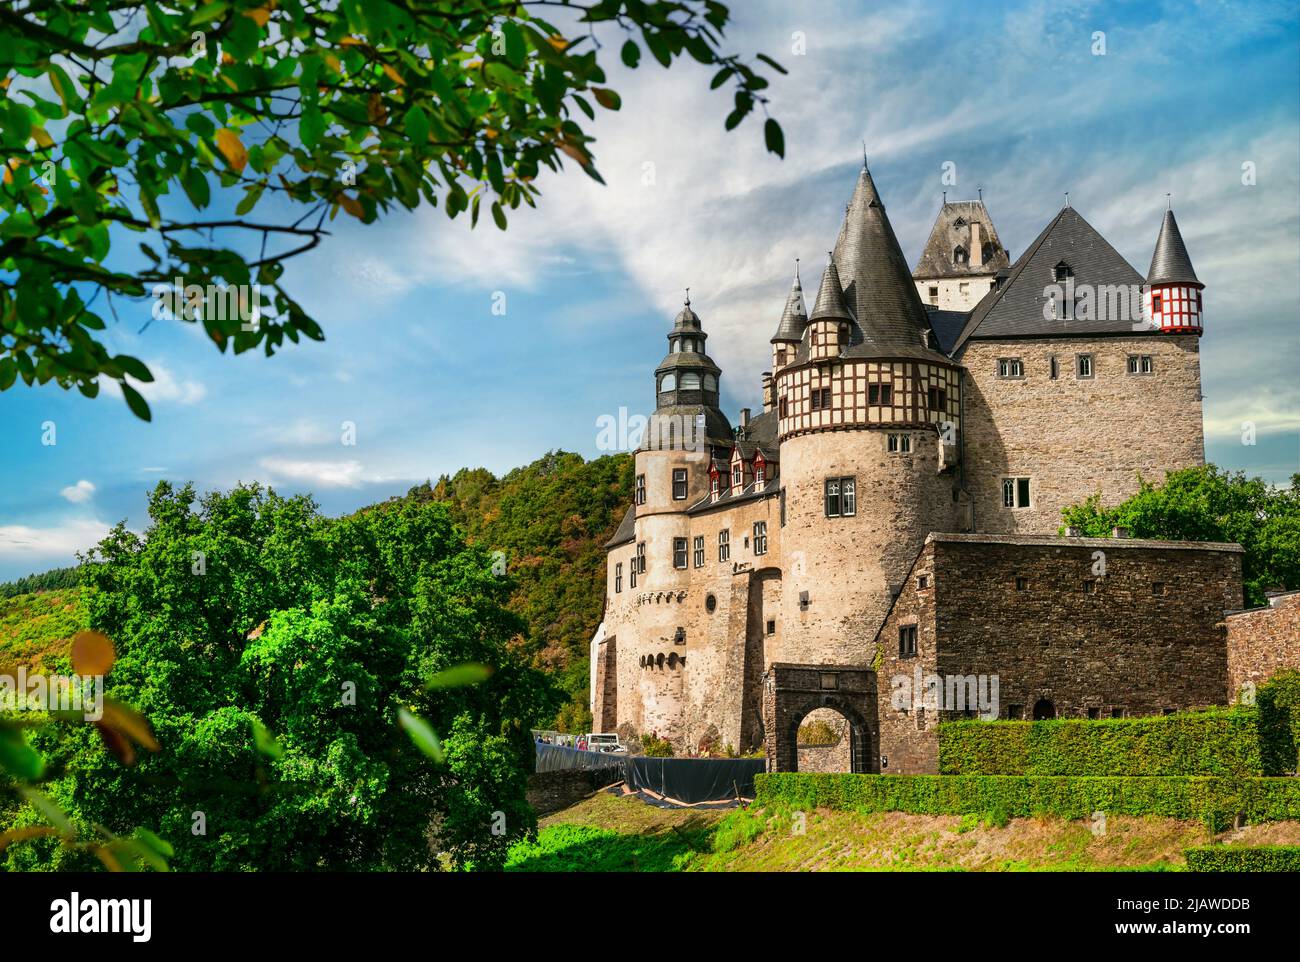 El Castillo Burresheim es un castillo medieval al noroeste de Mayen, Rheinland-Pfalz, Alemania viajes y lugares de interés Foto de stock